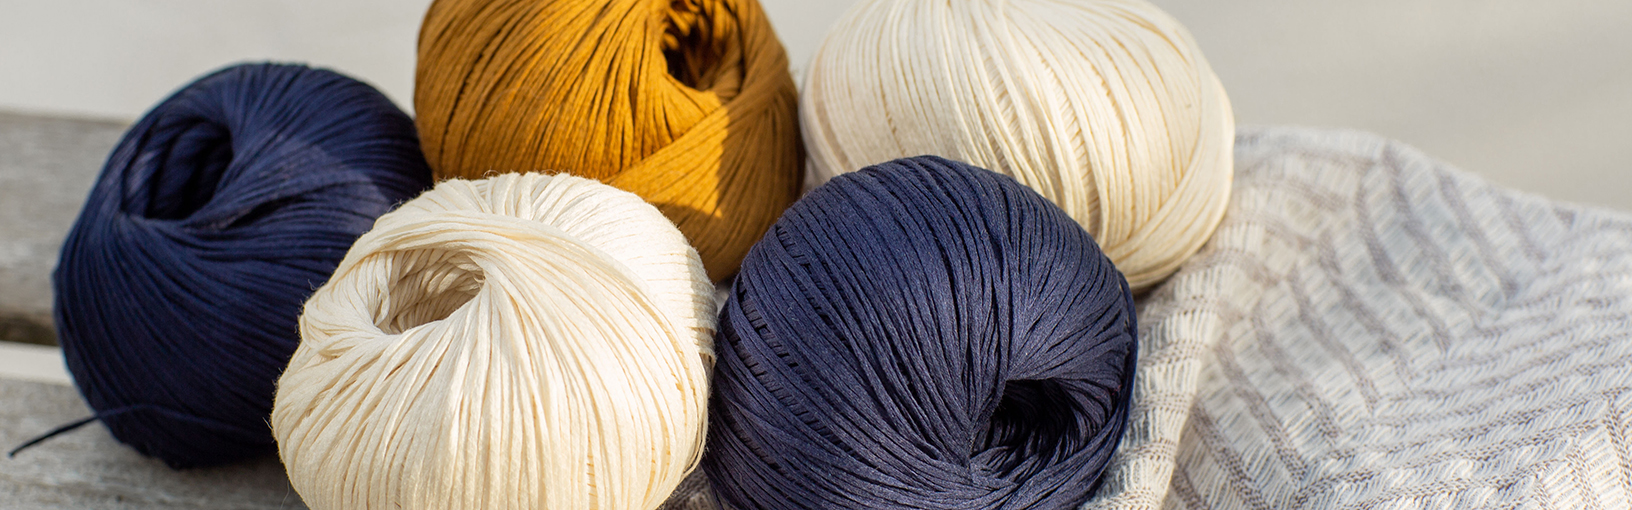 Hilos de alta calidad para tejer, crochet y fieltro Hilos Lana Grossa | Tweed